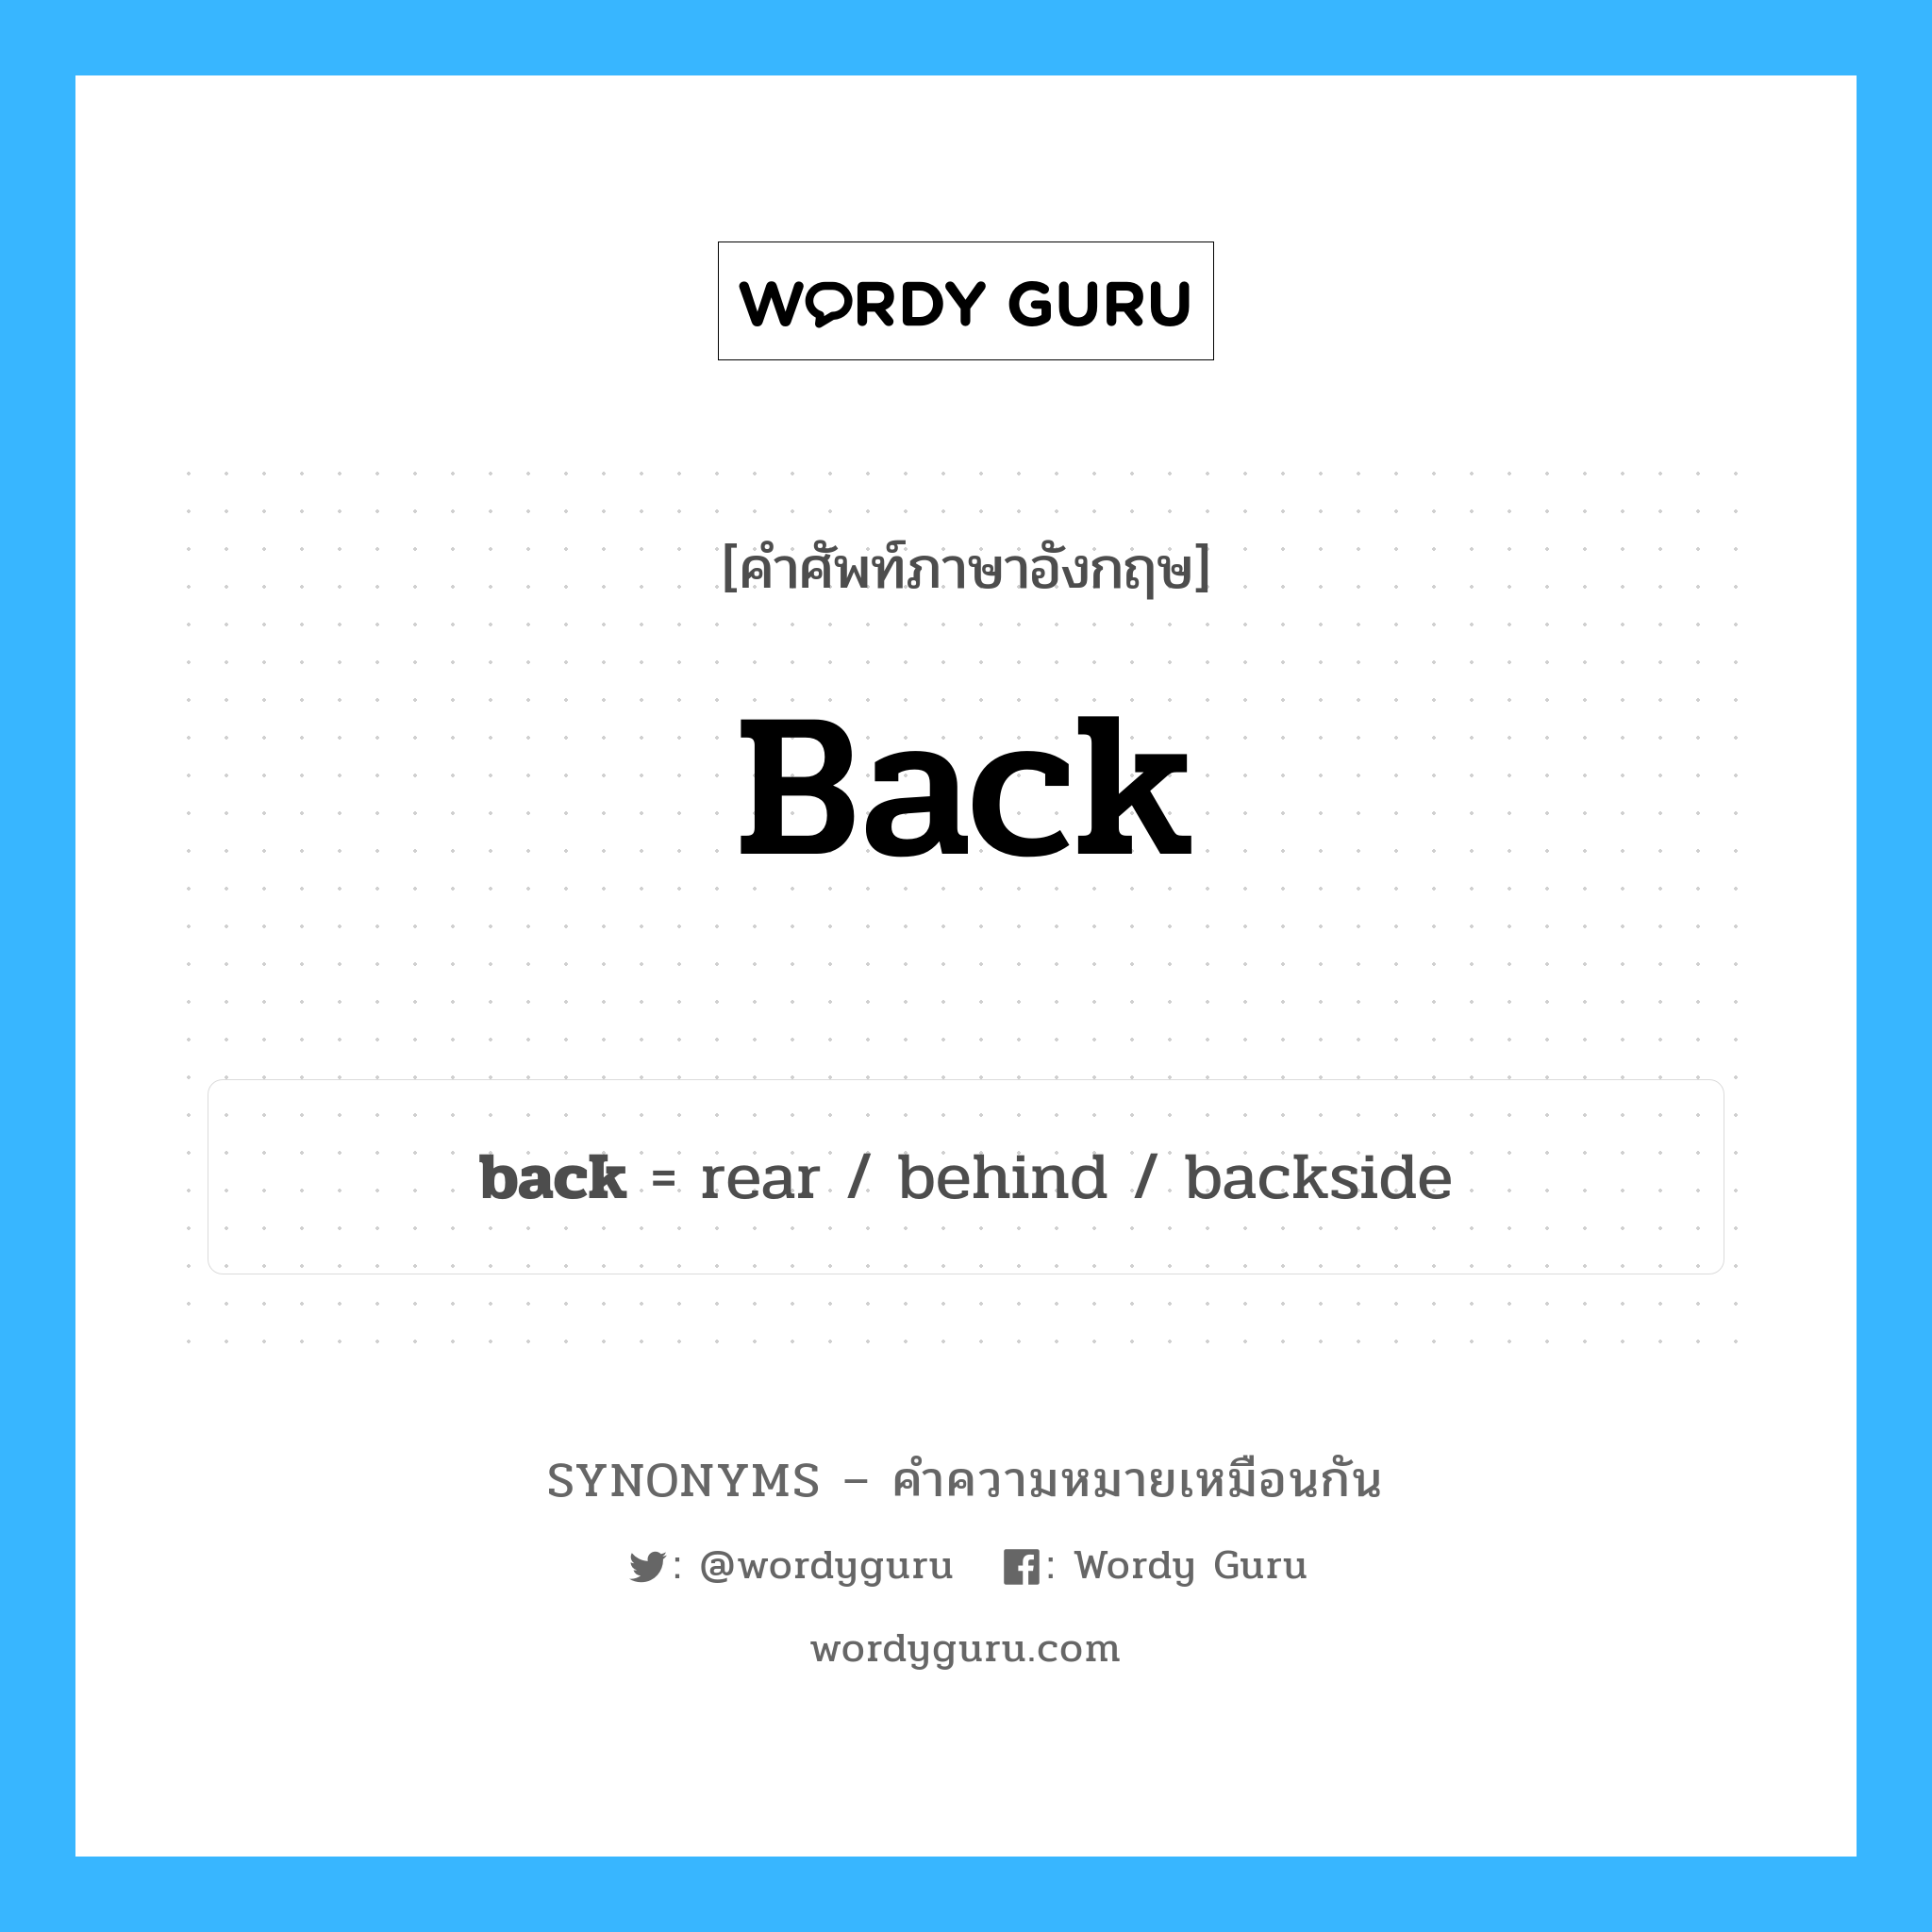 behind เป็นหนึ่งใน back และมีคำอื่น ๆ อีกดังนี้, คำศัพท์ภาษาอังกฤษ behind ความหมายคล้ายกันกับ back แปลว่า เบื้องหลัง หมวด back